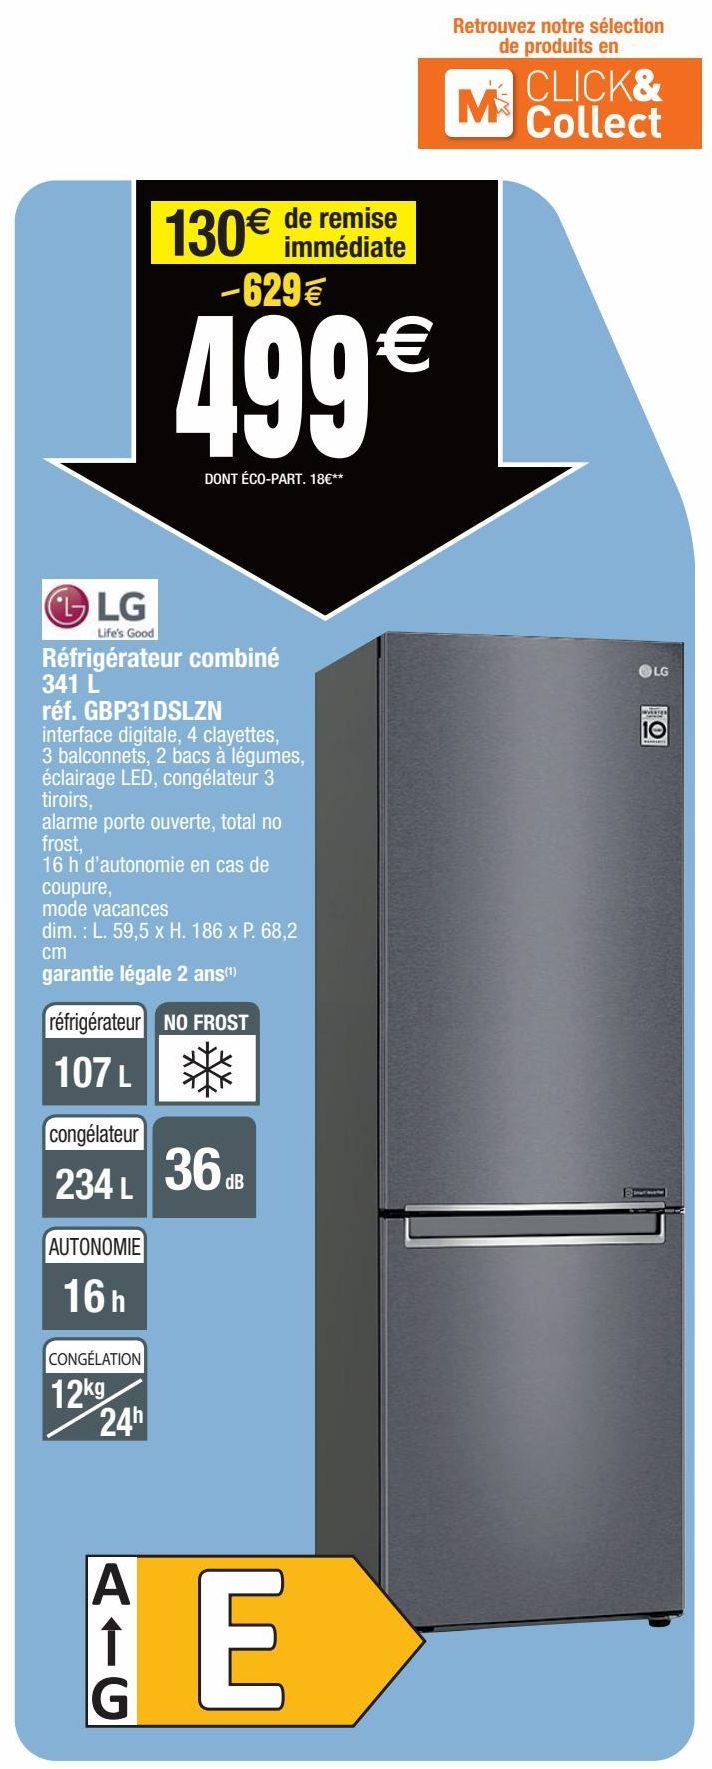 LG Réfrigérateur combiné 341L réf.GBP31DSLZN